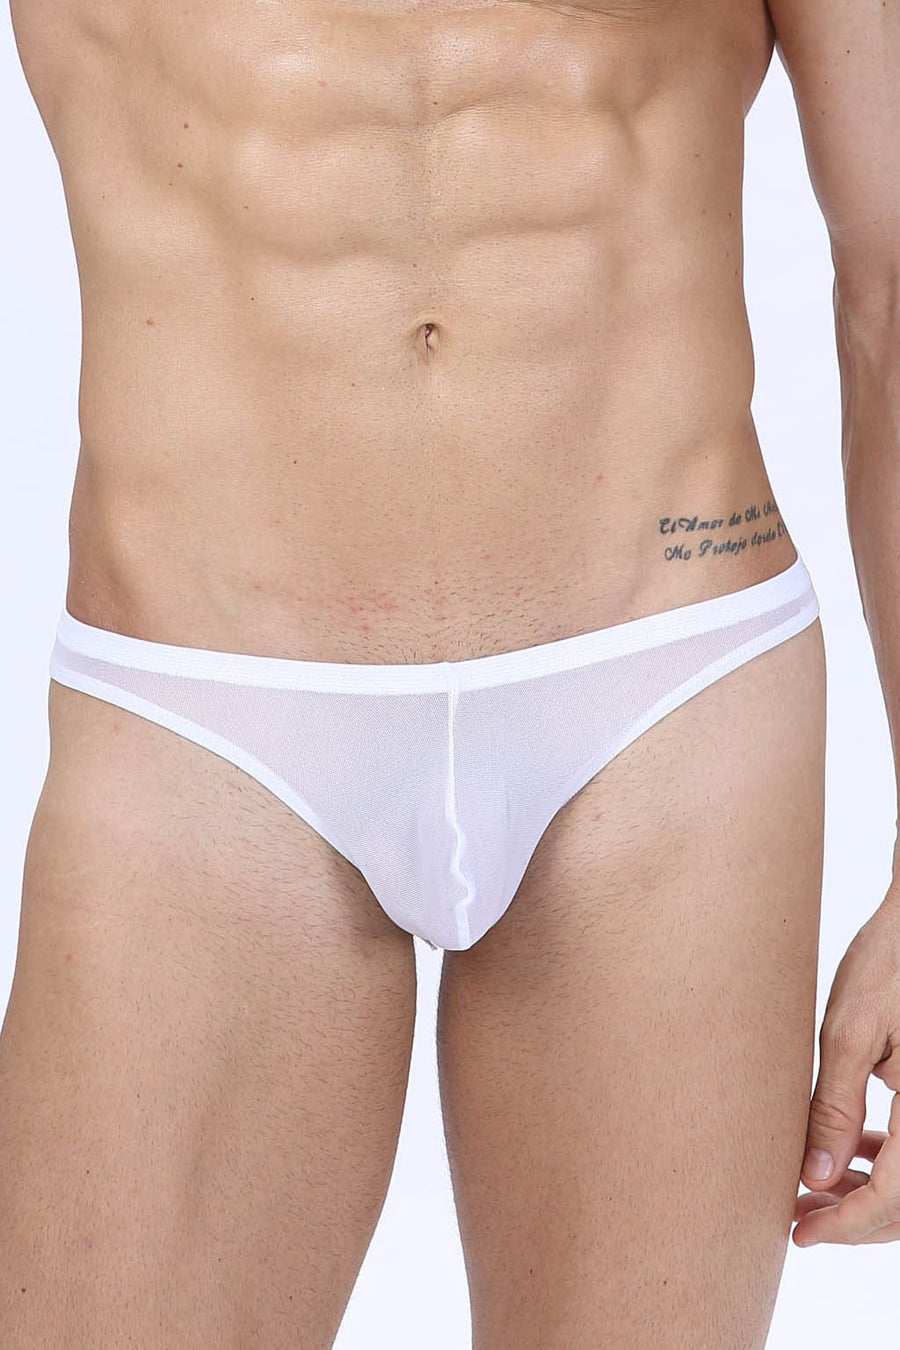  Mens Transparent Underwear Sexy See Through Mesh